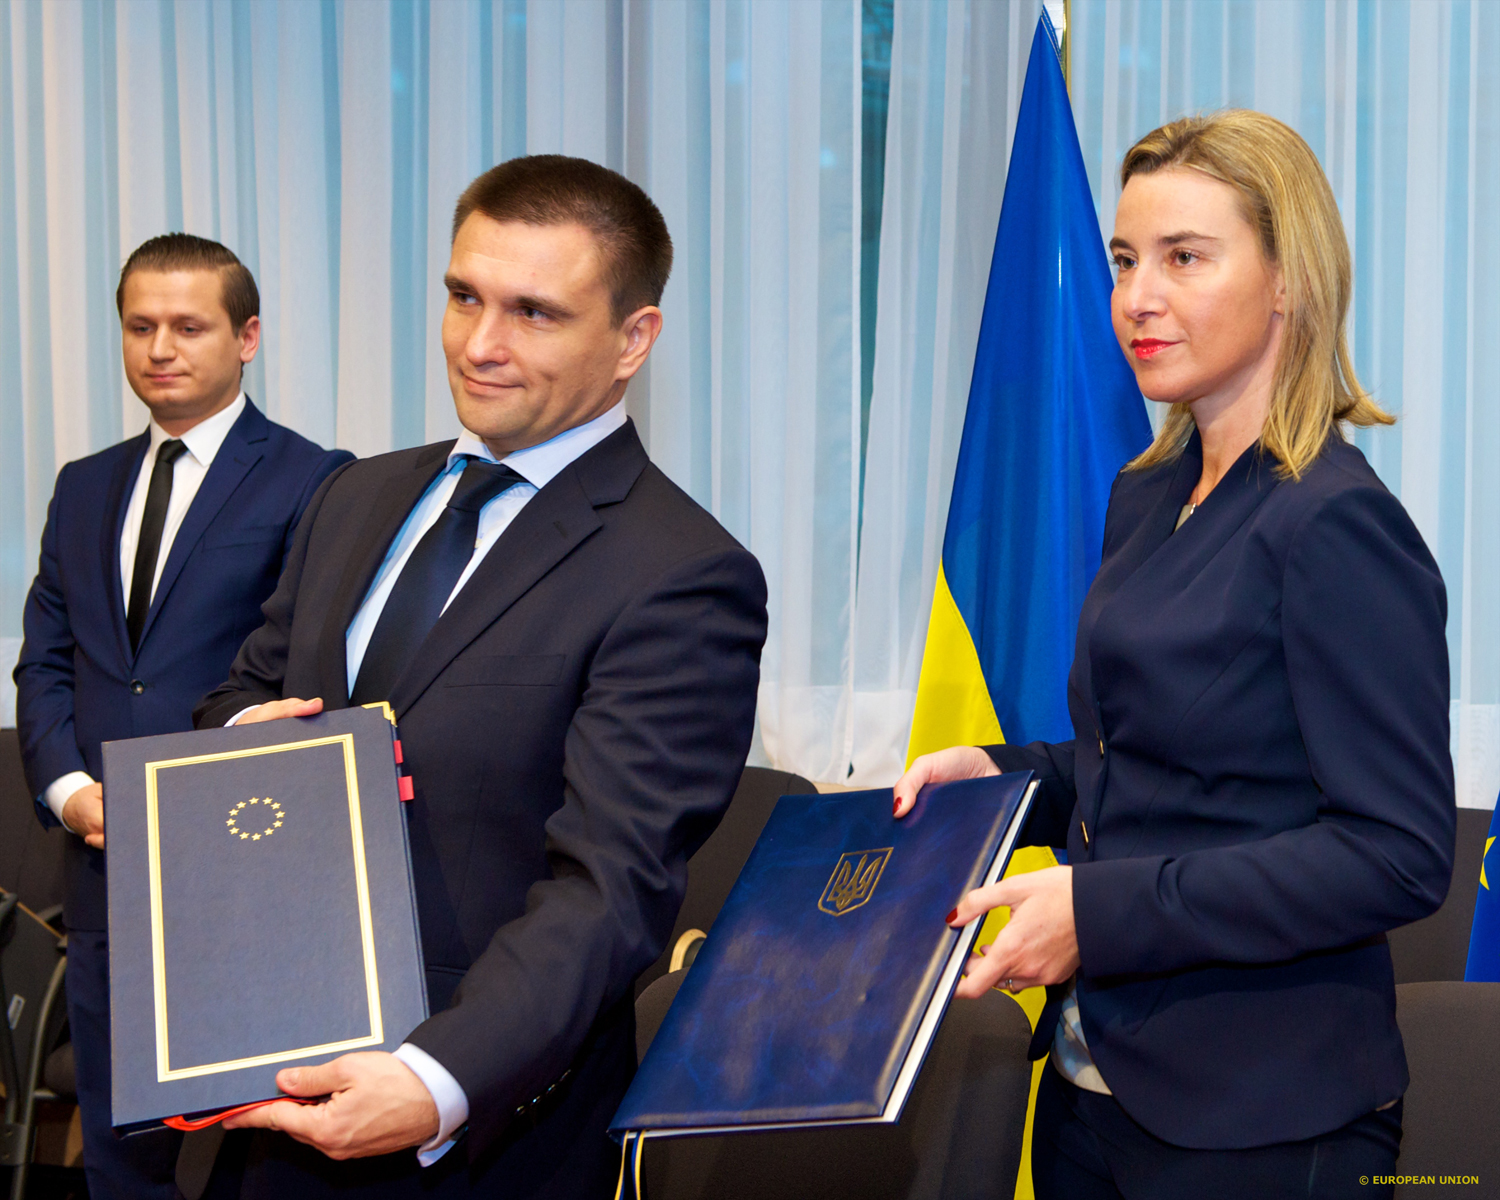 EUAM Ukraina -siviilikriisinhallintamissio aloittaa työnsä 1. joulukuuta. Kuvassa Ukrainan ulkoministeri Klimkin ja EU:n ulkoasioiden ja turvallisuuspolitiikan korkea edustaja Mogherini. ©Euroopan unioni 2014